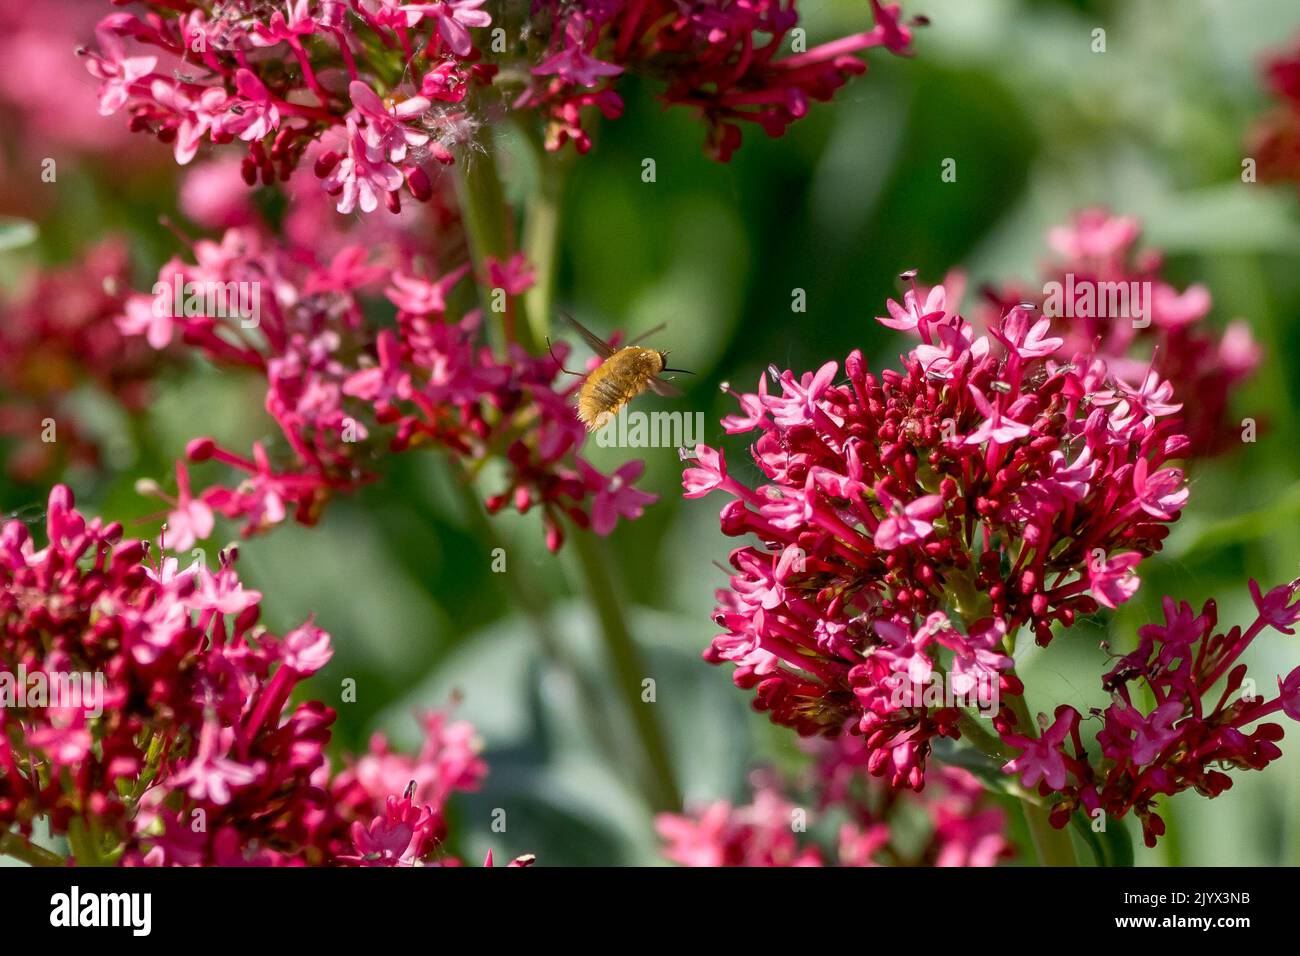 Eine Bienenfliege, eine wichtige Bestäuberin, von der Rückseite aus gesehen, die durch einen rosa Baldrian-Garten fliegt. Stockfoto